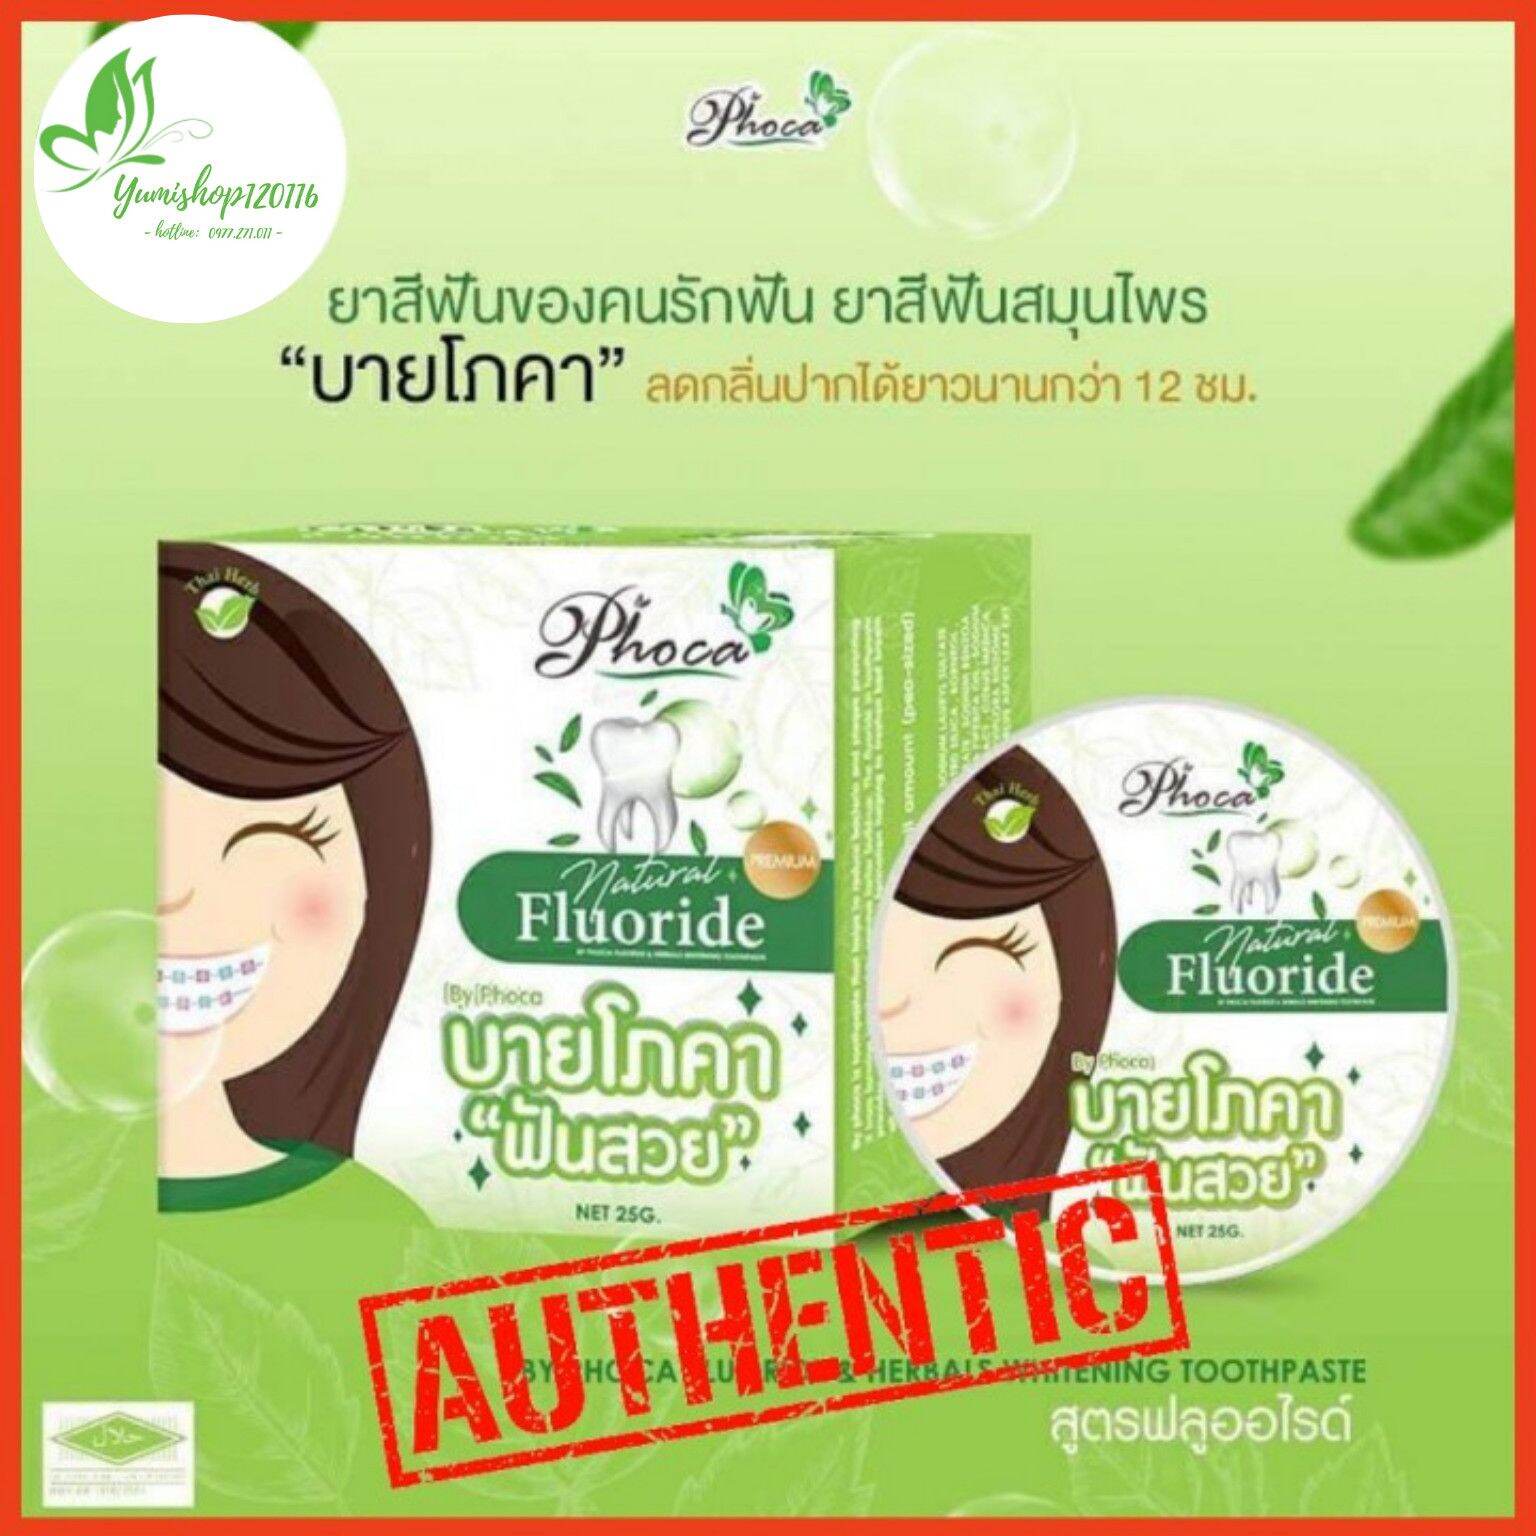 3 Hộp Kem Đánh Răng Thảo Dược Phoca Của Thái Lan thumbnail